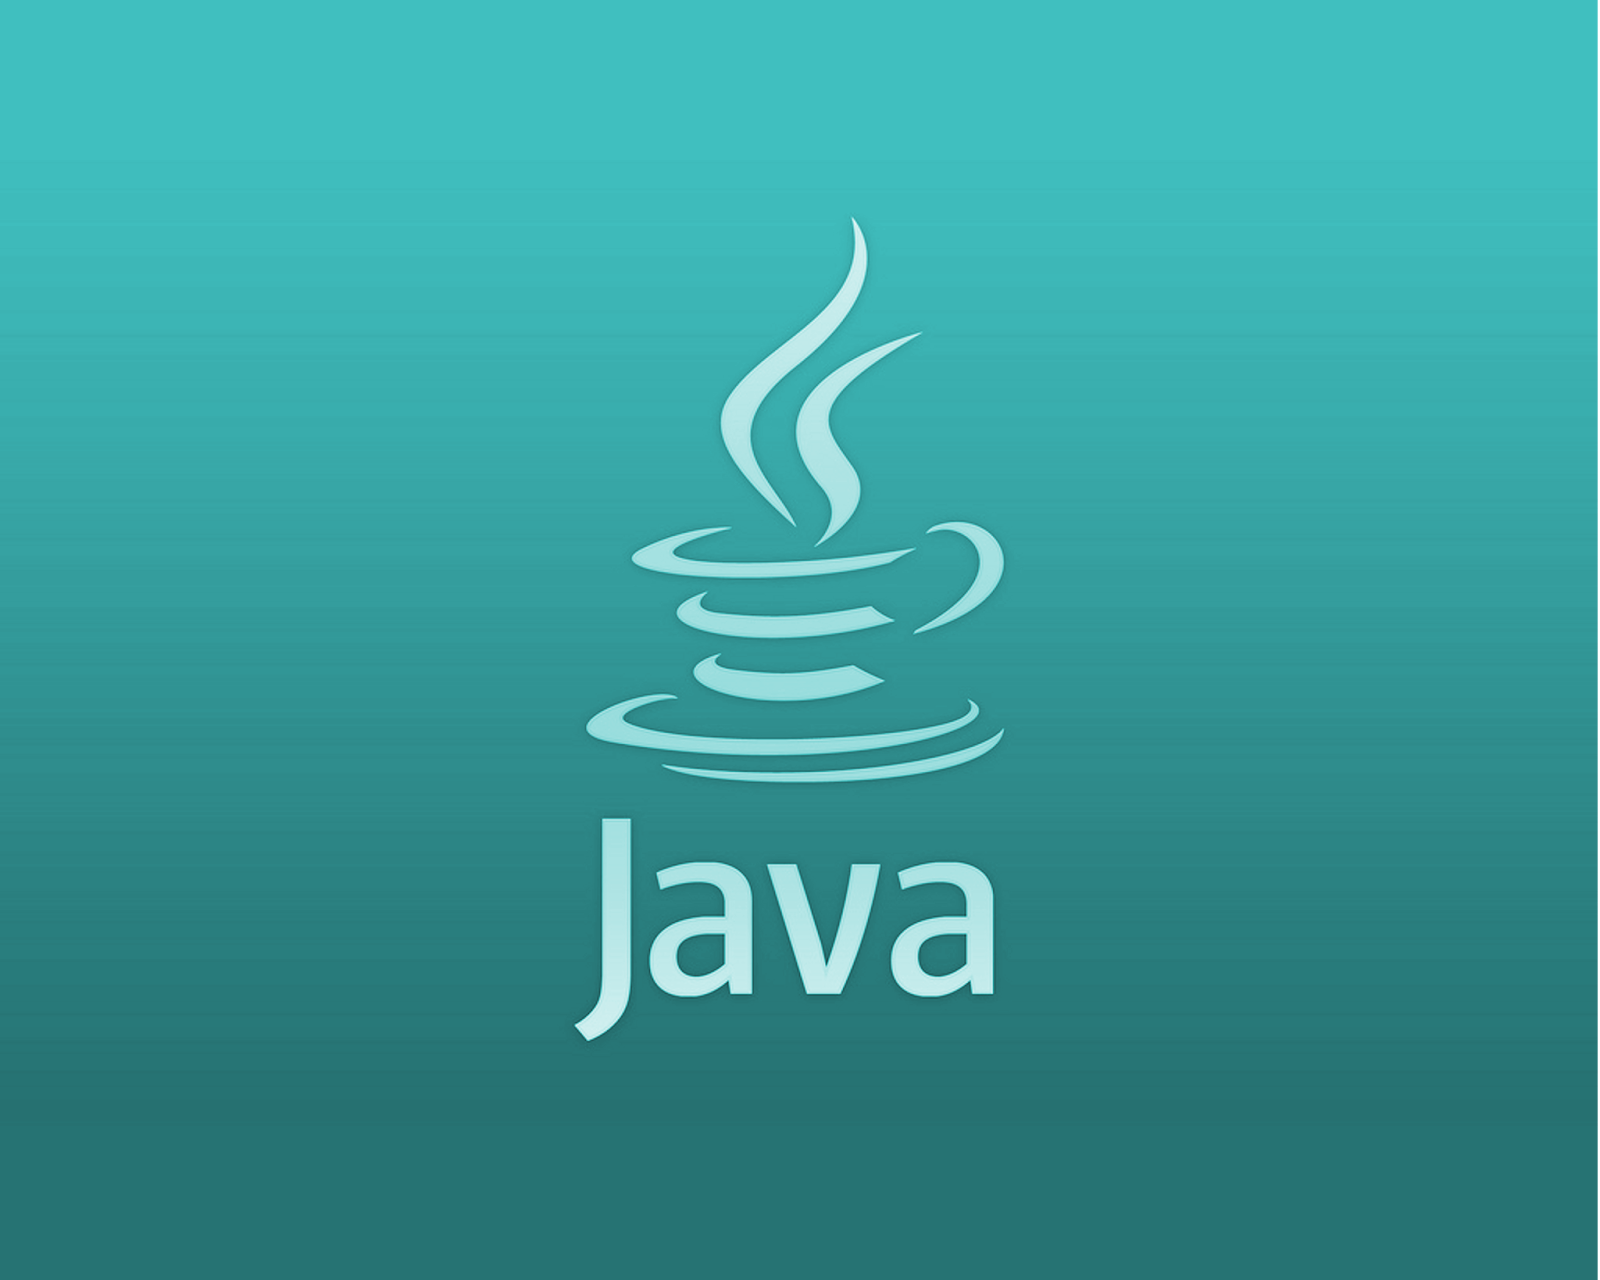 Язык программирования java. Java язык программирования логотип. Жавалоготип язык программирования. Иконка java. Java информация